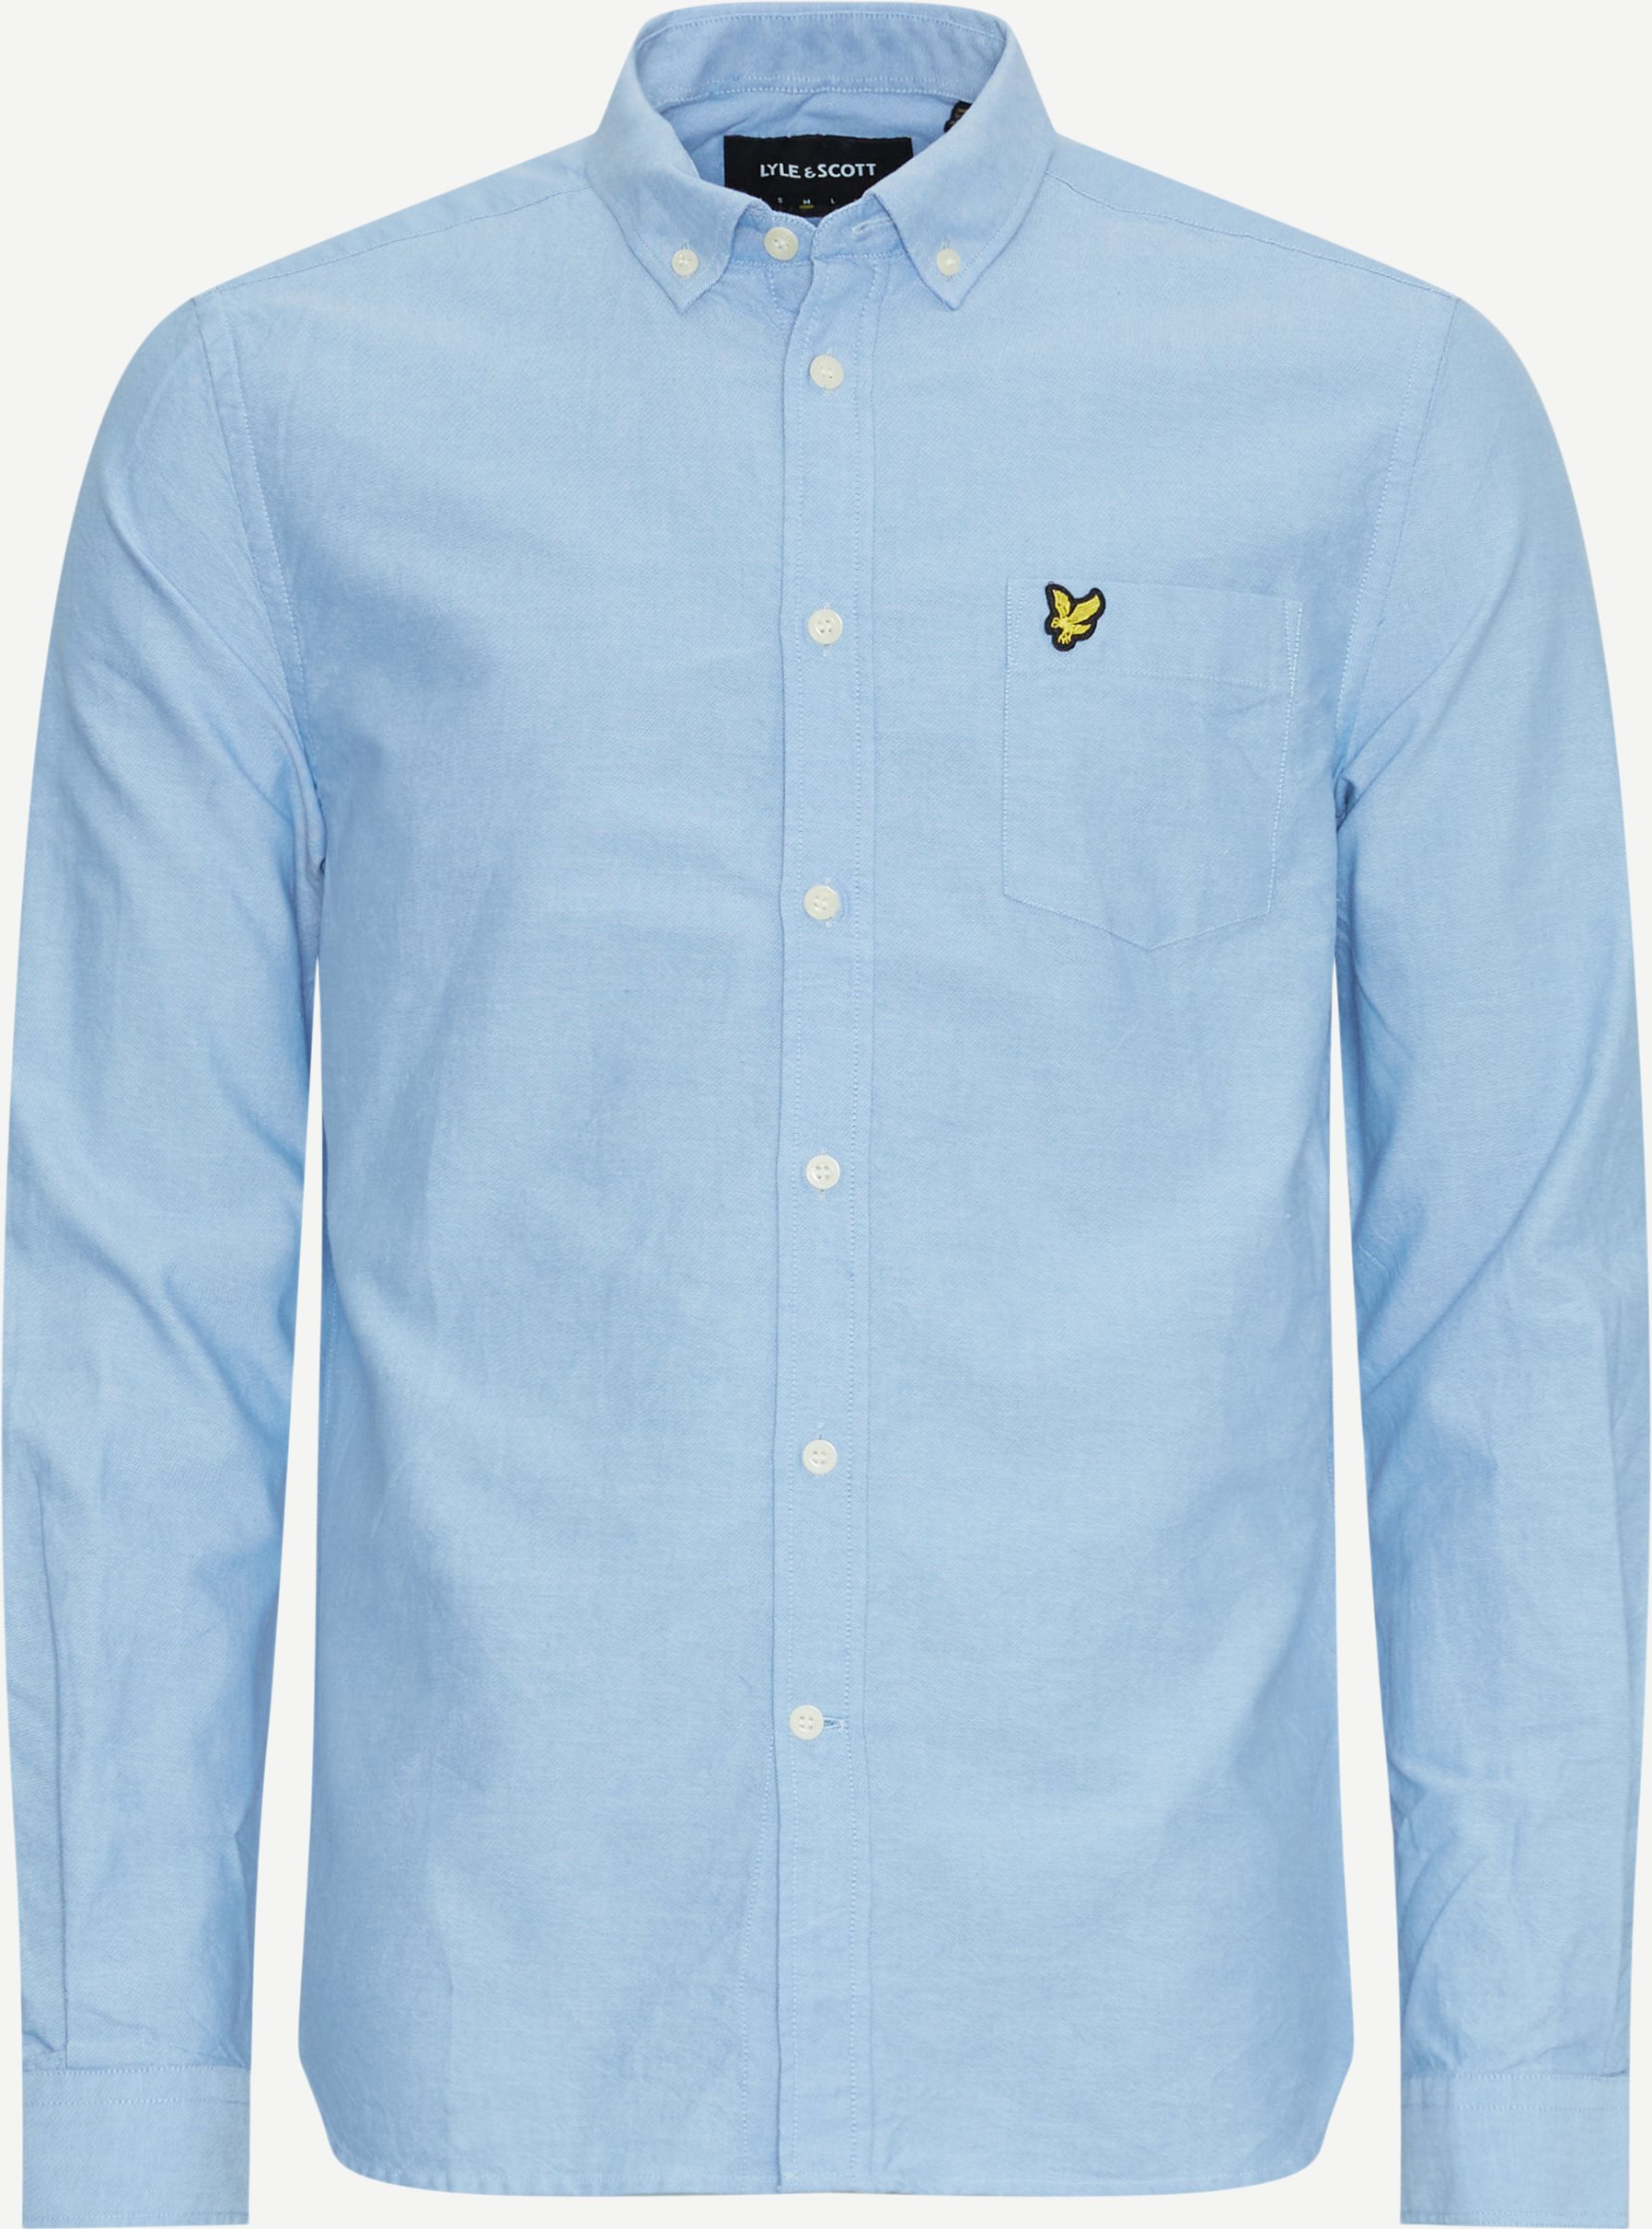 Lyle & Scott Shirts REGULAR FIT LIGHT WEIGHT OXFORD SHIRT LW1302VOG Blue